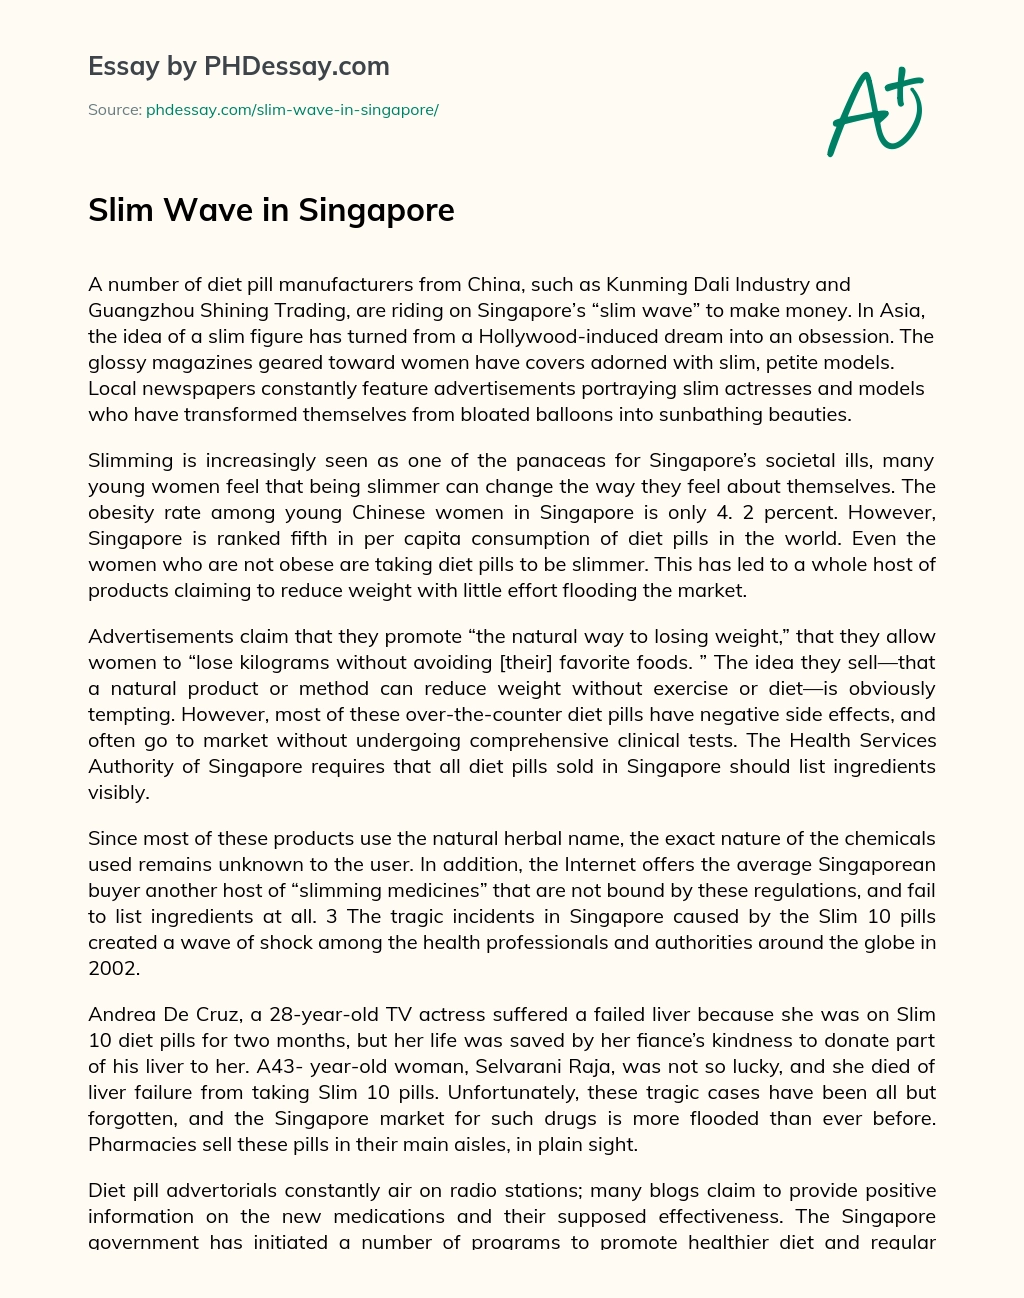 Slim Wave in Singapore essay